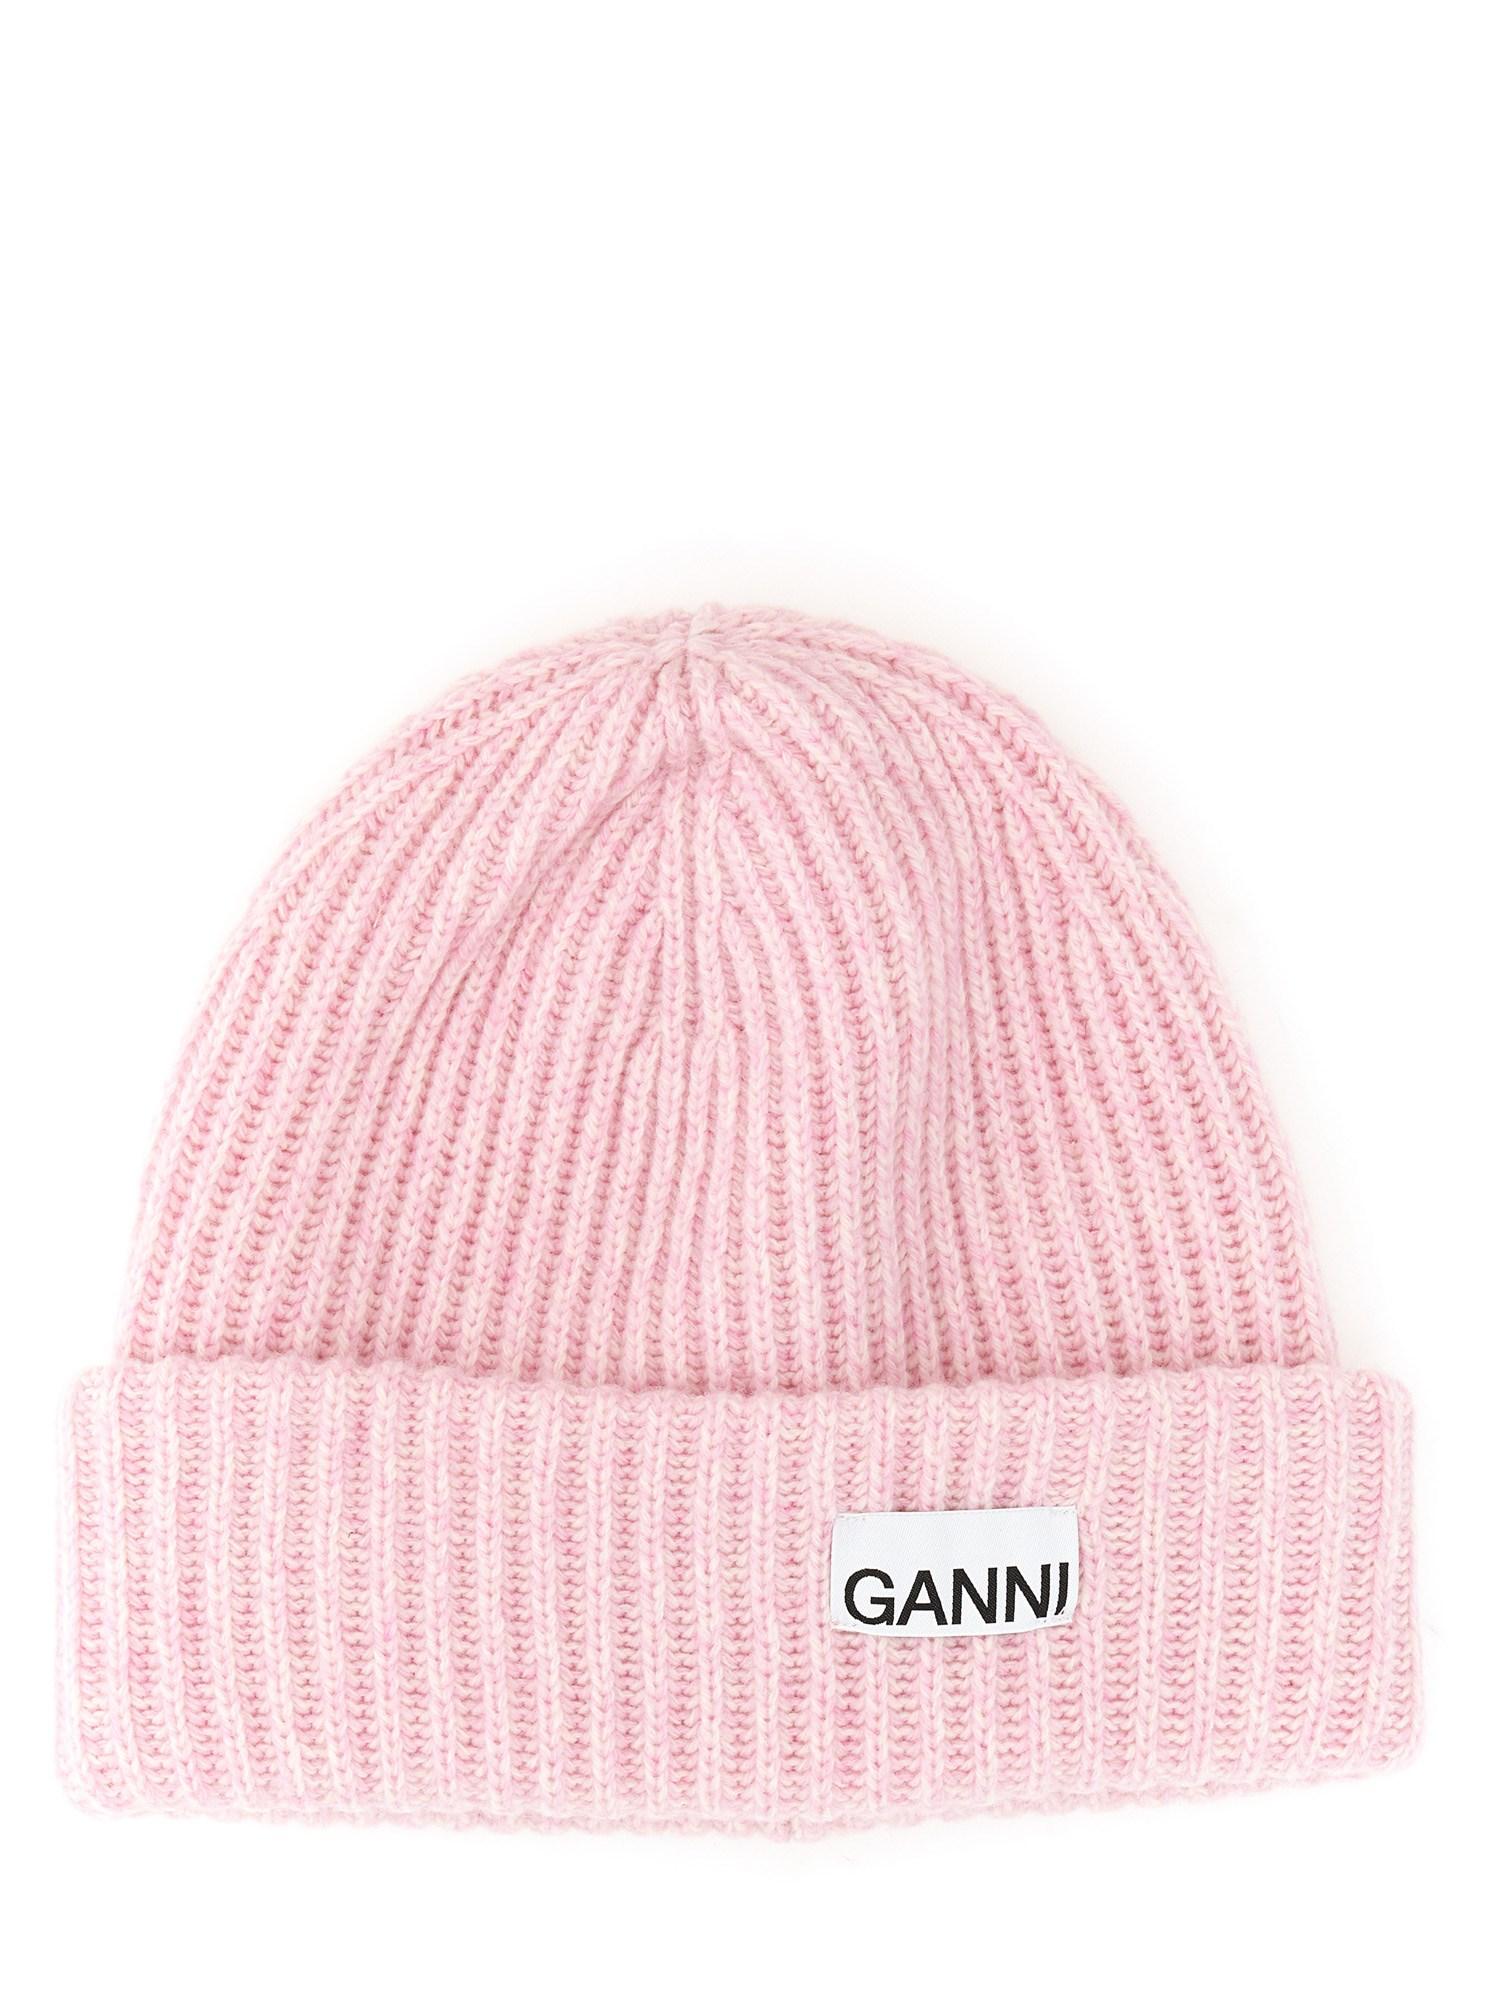 Ganni Beanie Hat With Logo in Pink | Lyst